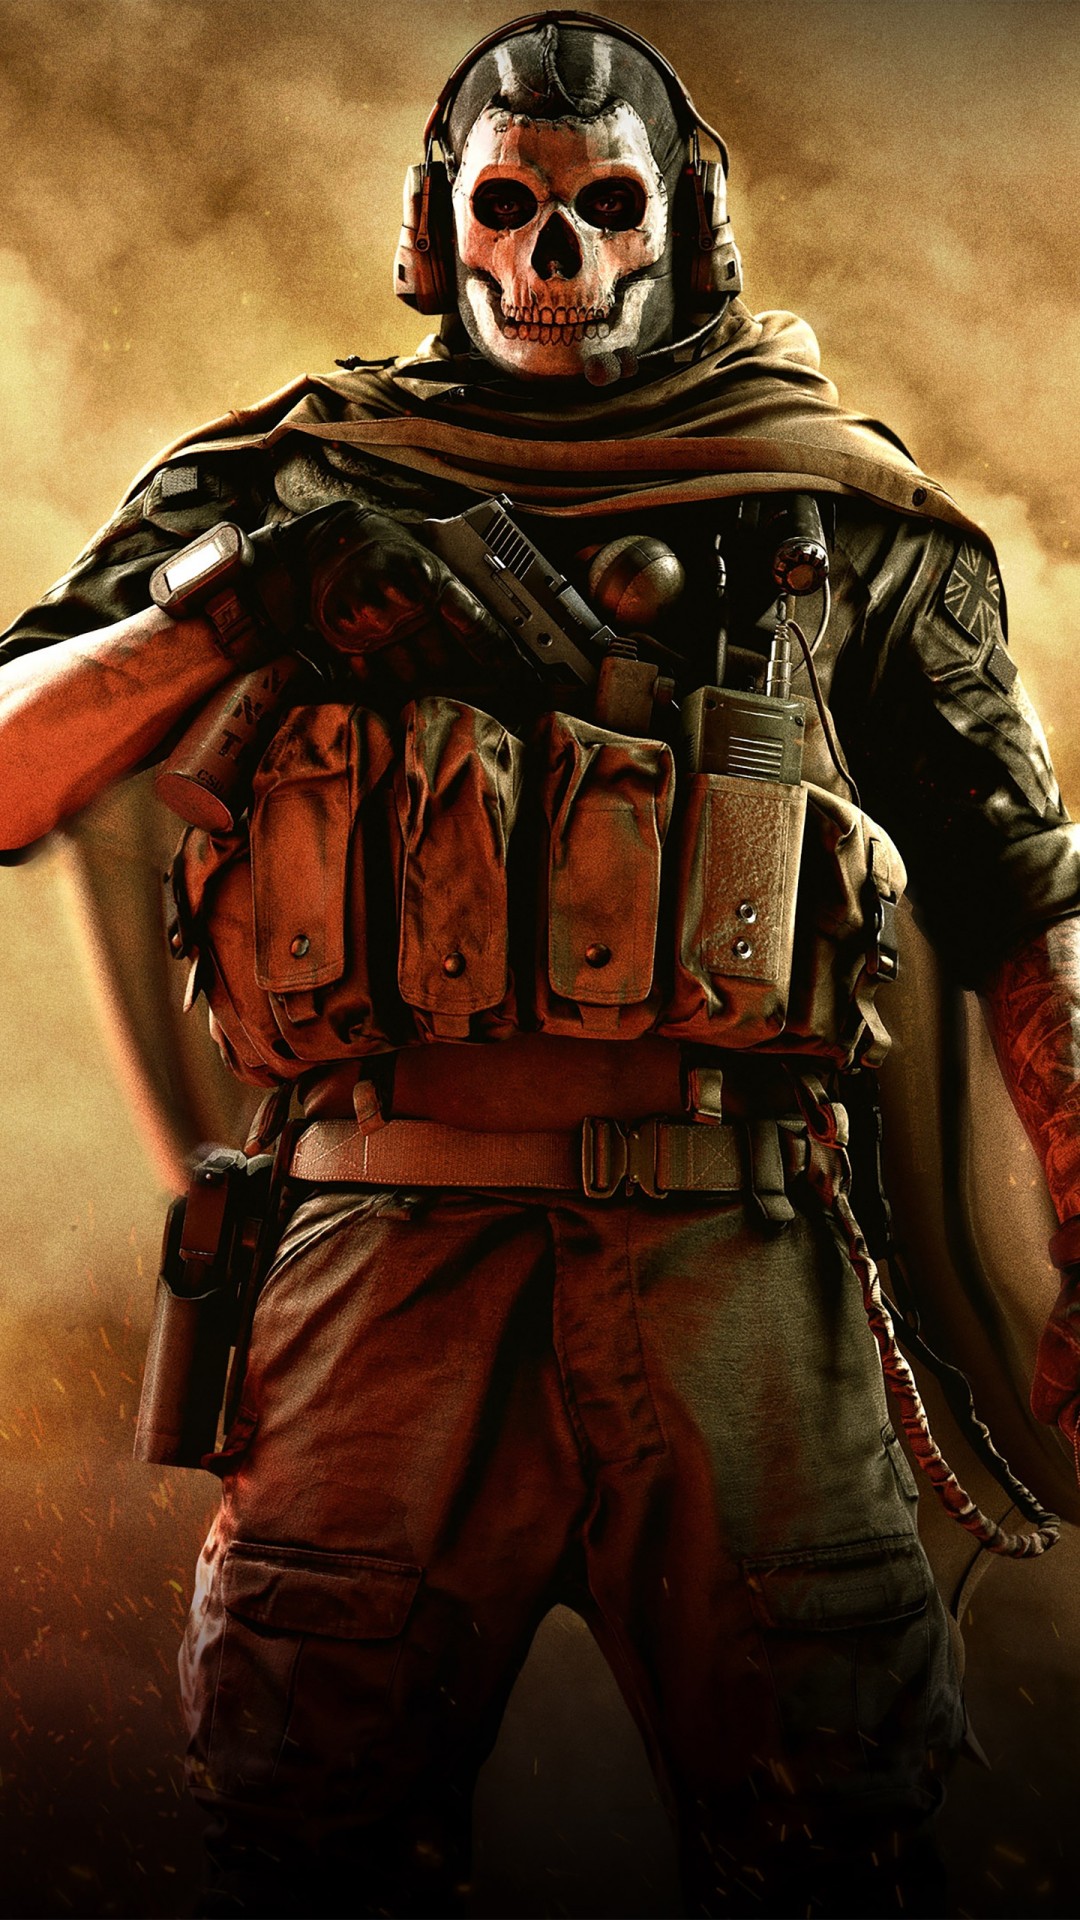 تصویر شاهکار Call of Duty از مرد با صورت جمجه